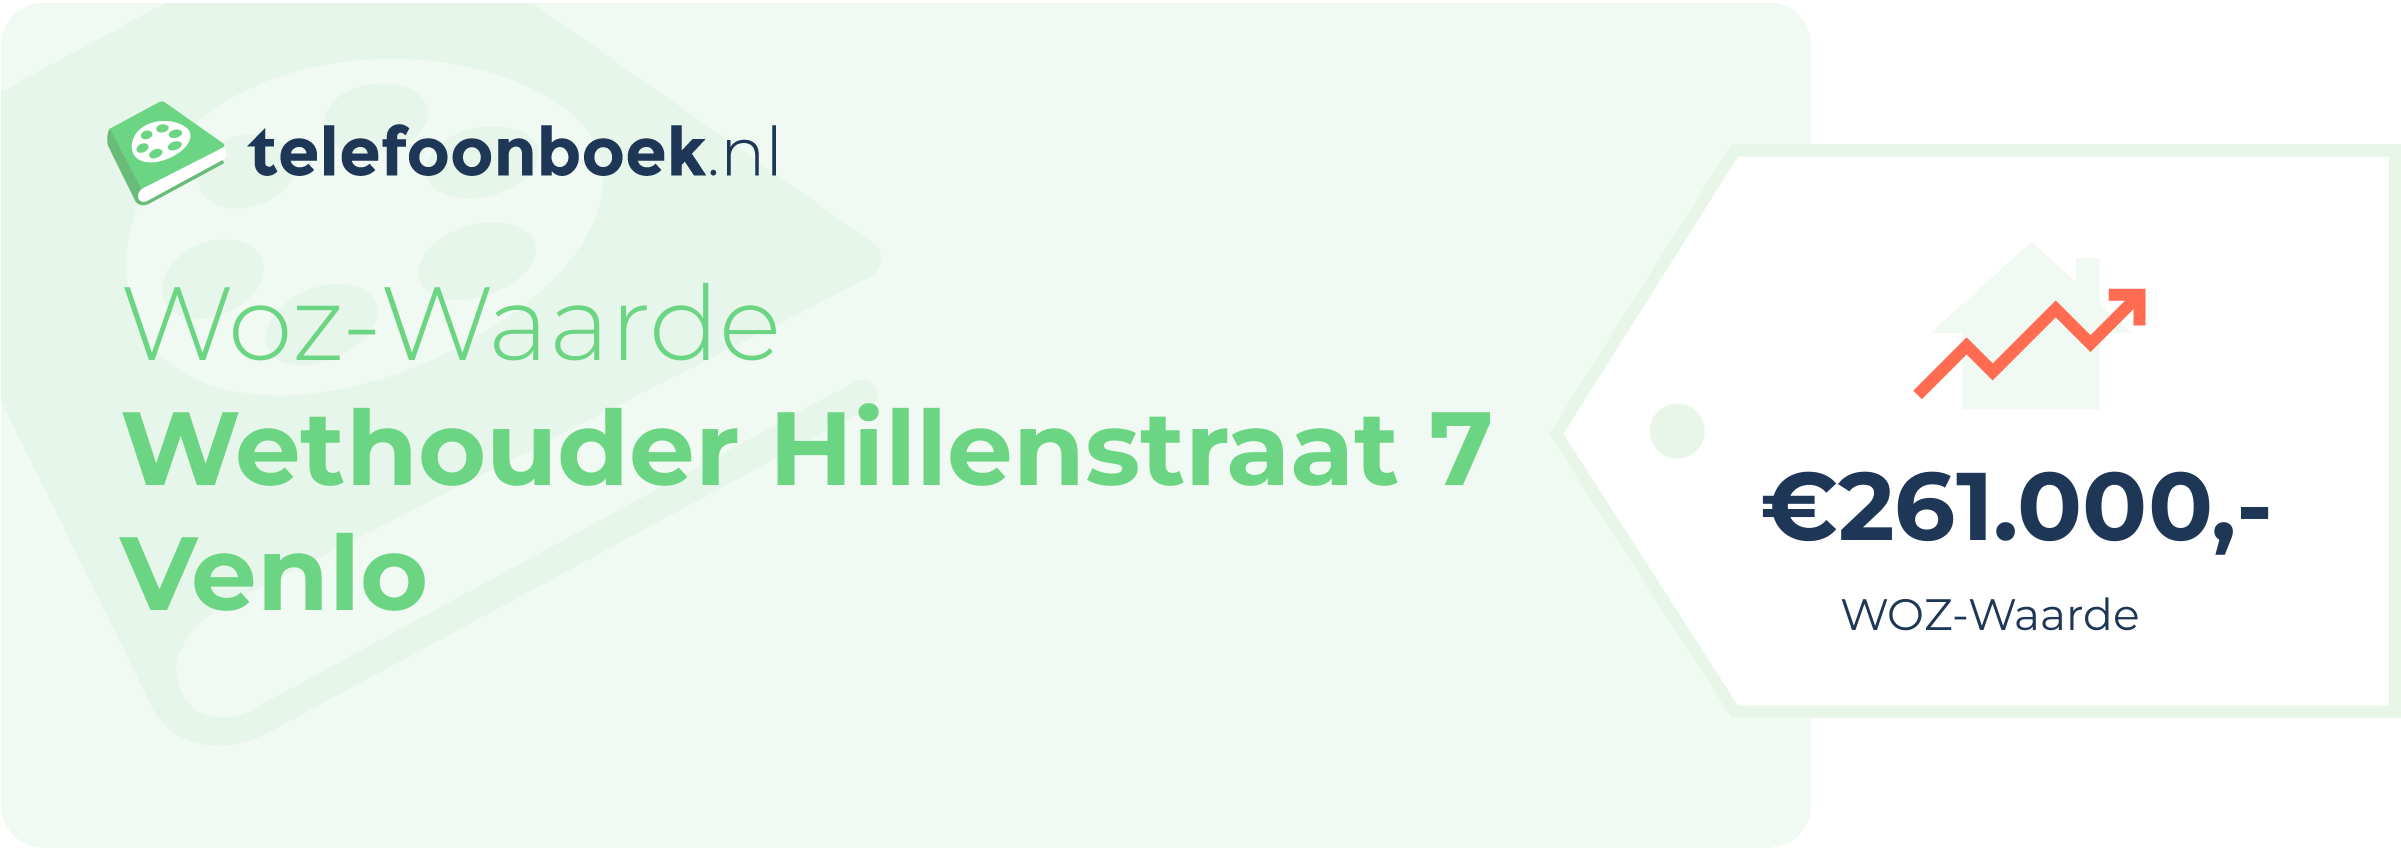 WOZ-waarde Wethouder Hillenstraat 7 Venlo